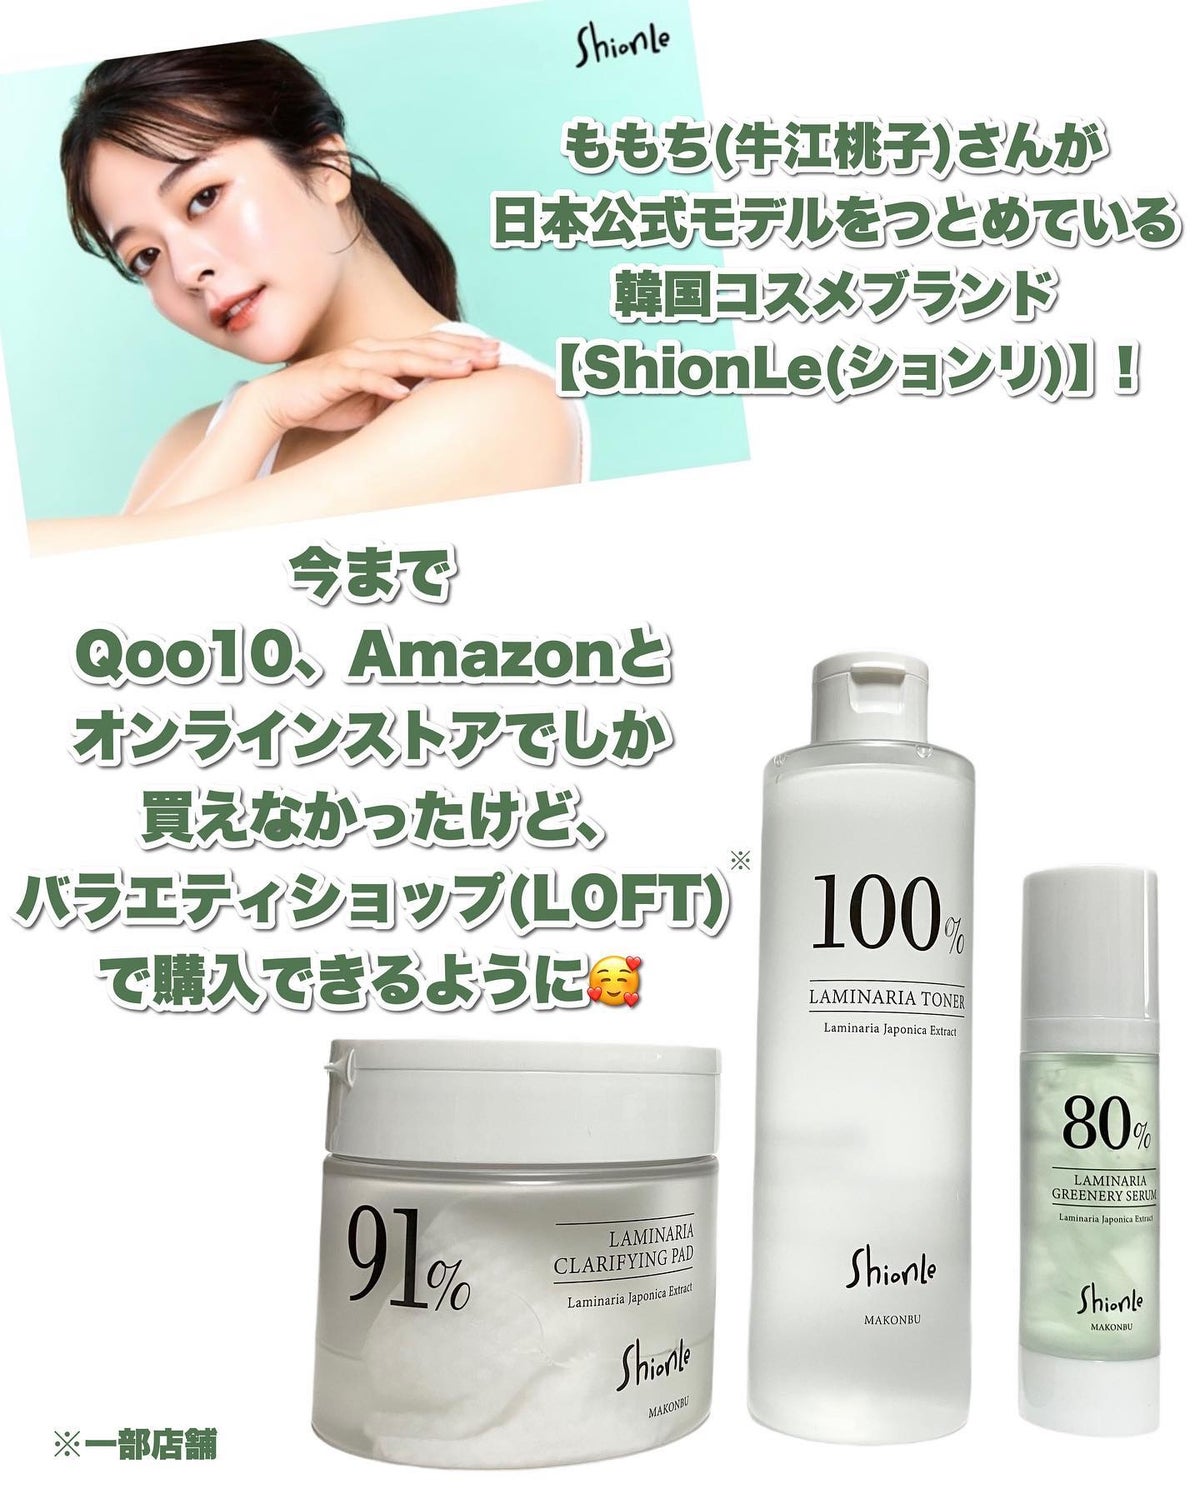 Shionleのスキンケア・基礎化粧品 ラミナリアトナー他、2商品を使った